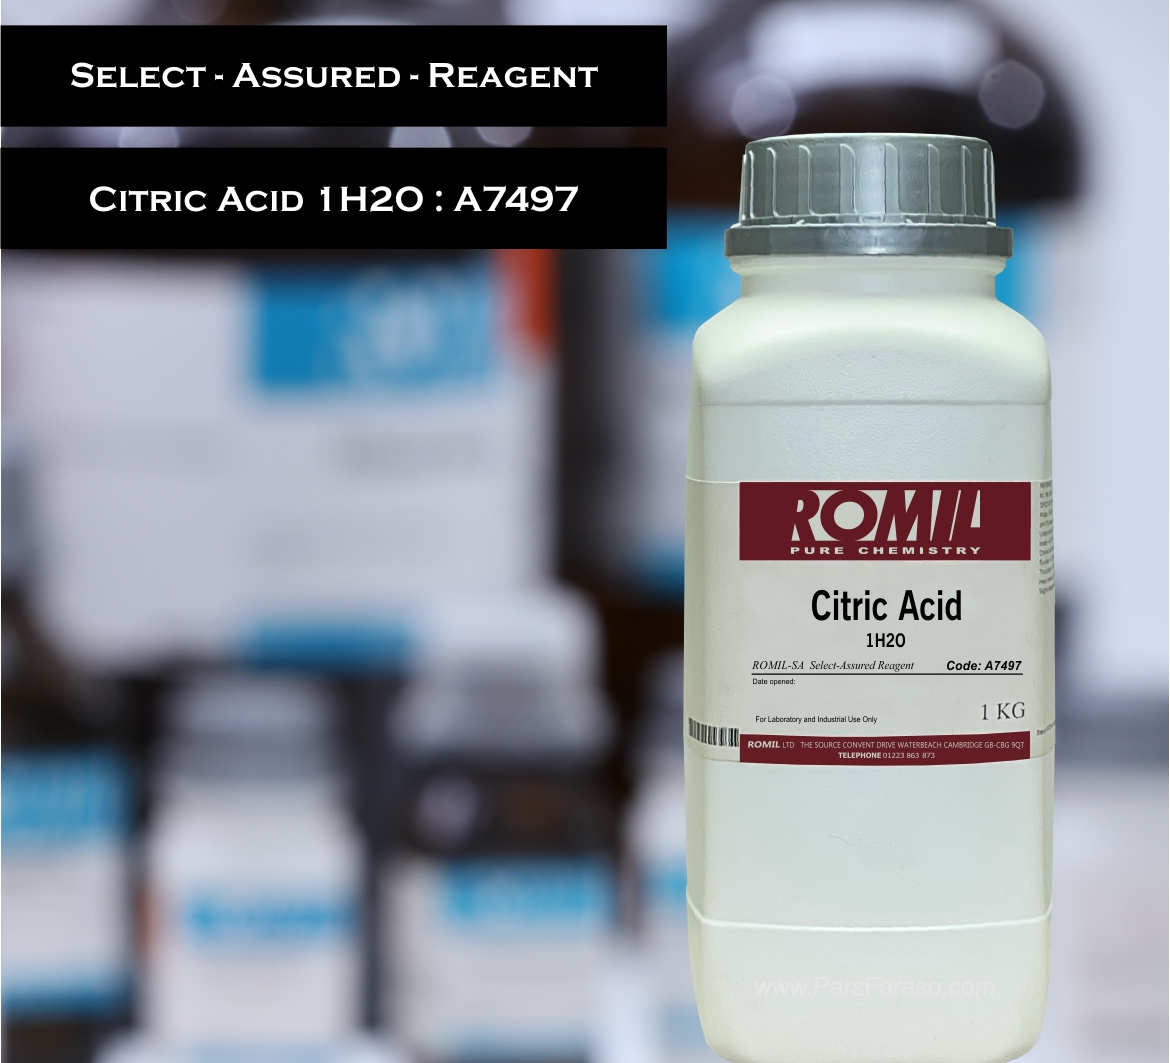 اسید سیتریک کد کاتالوگ روميل A7497 - خرید و فروش مواد شیمیایی